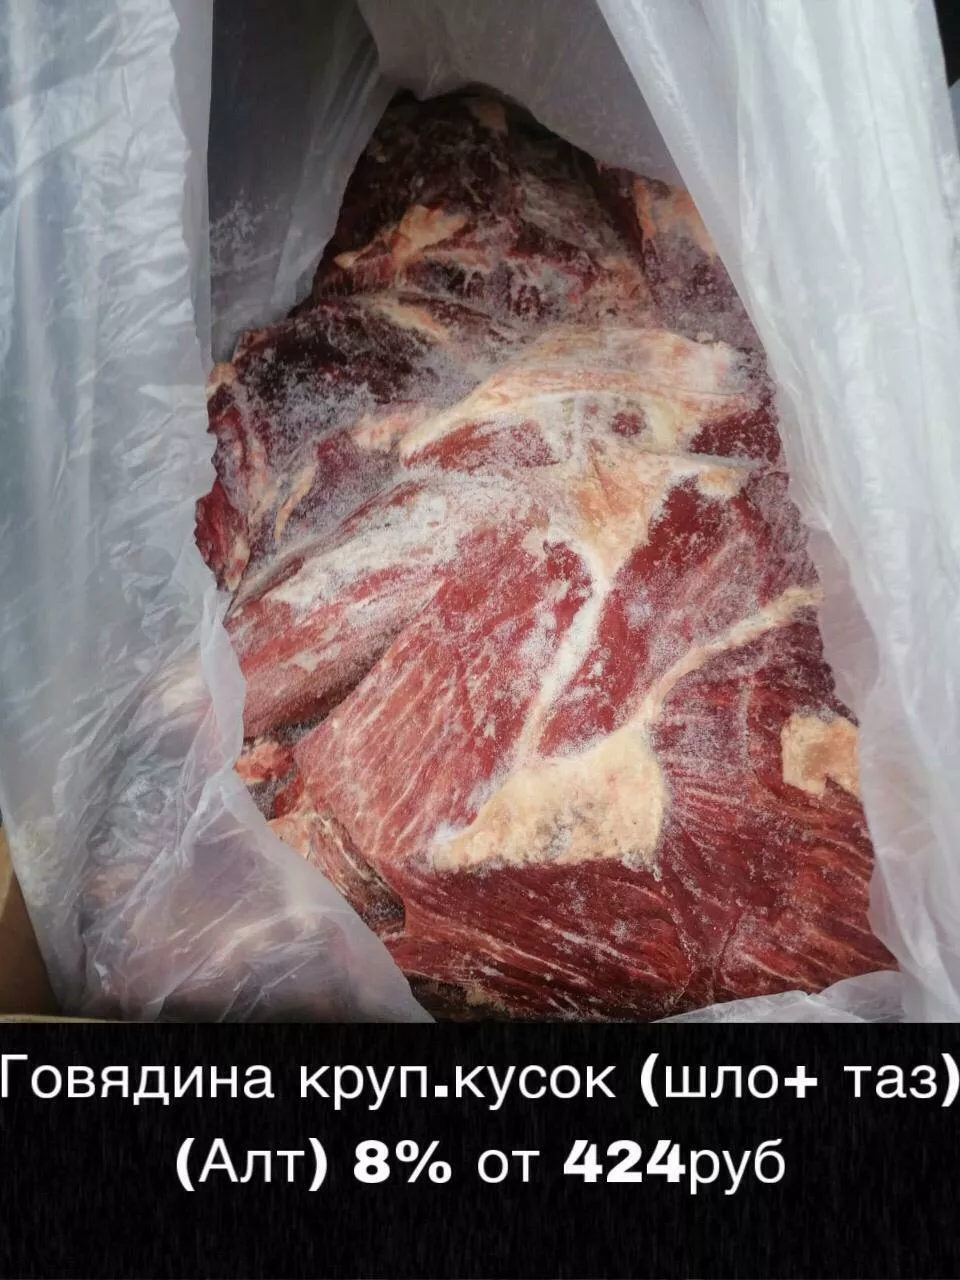 мясо оптом доставка красноярск бесплатно в Красноярске и Красноярском крае 2